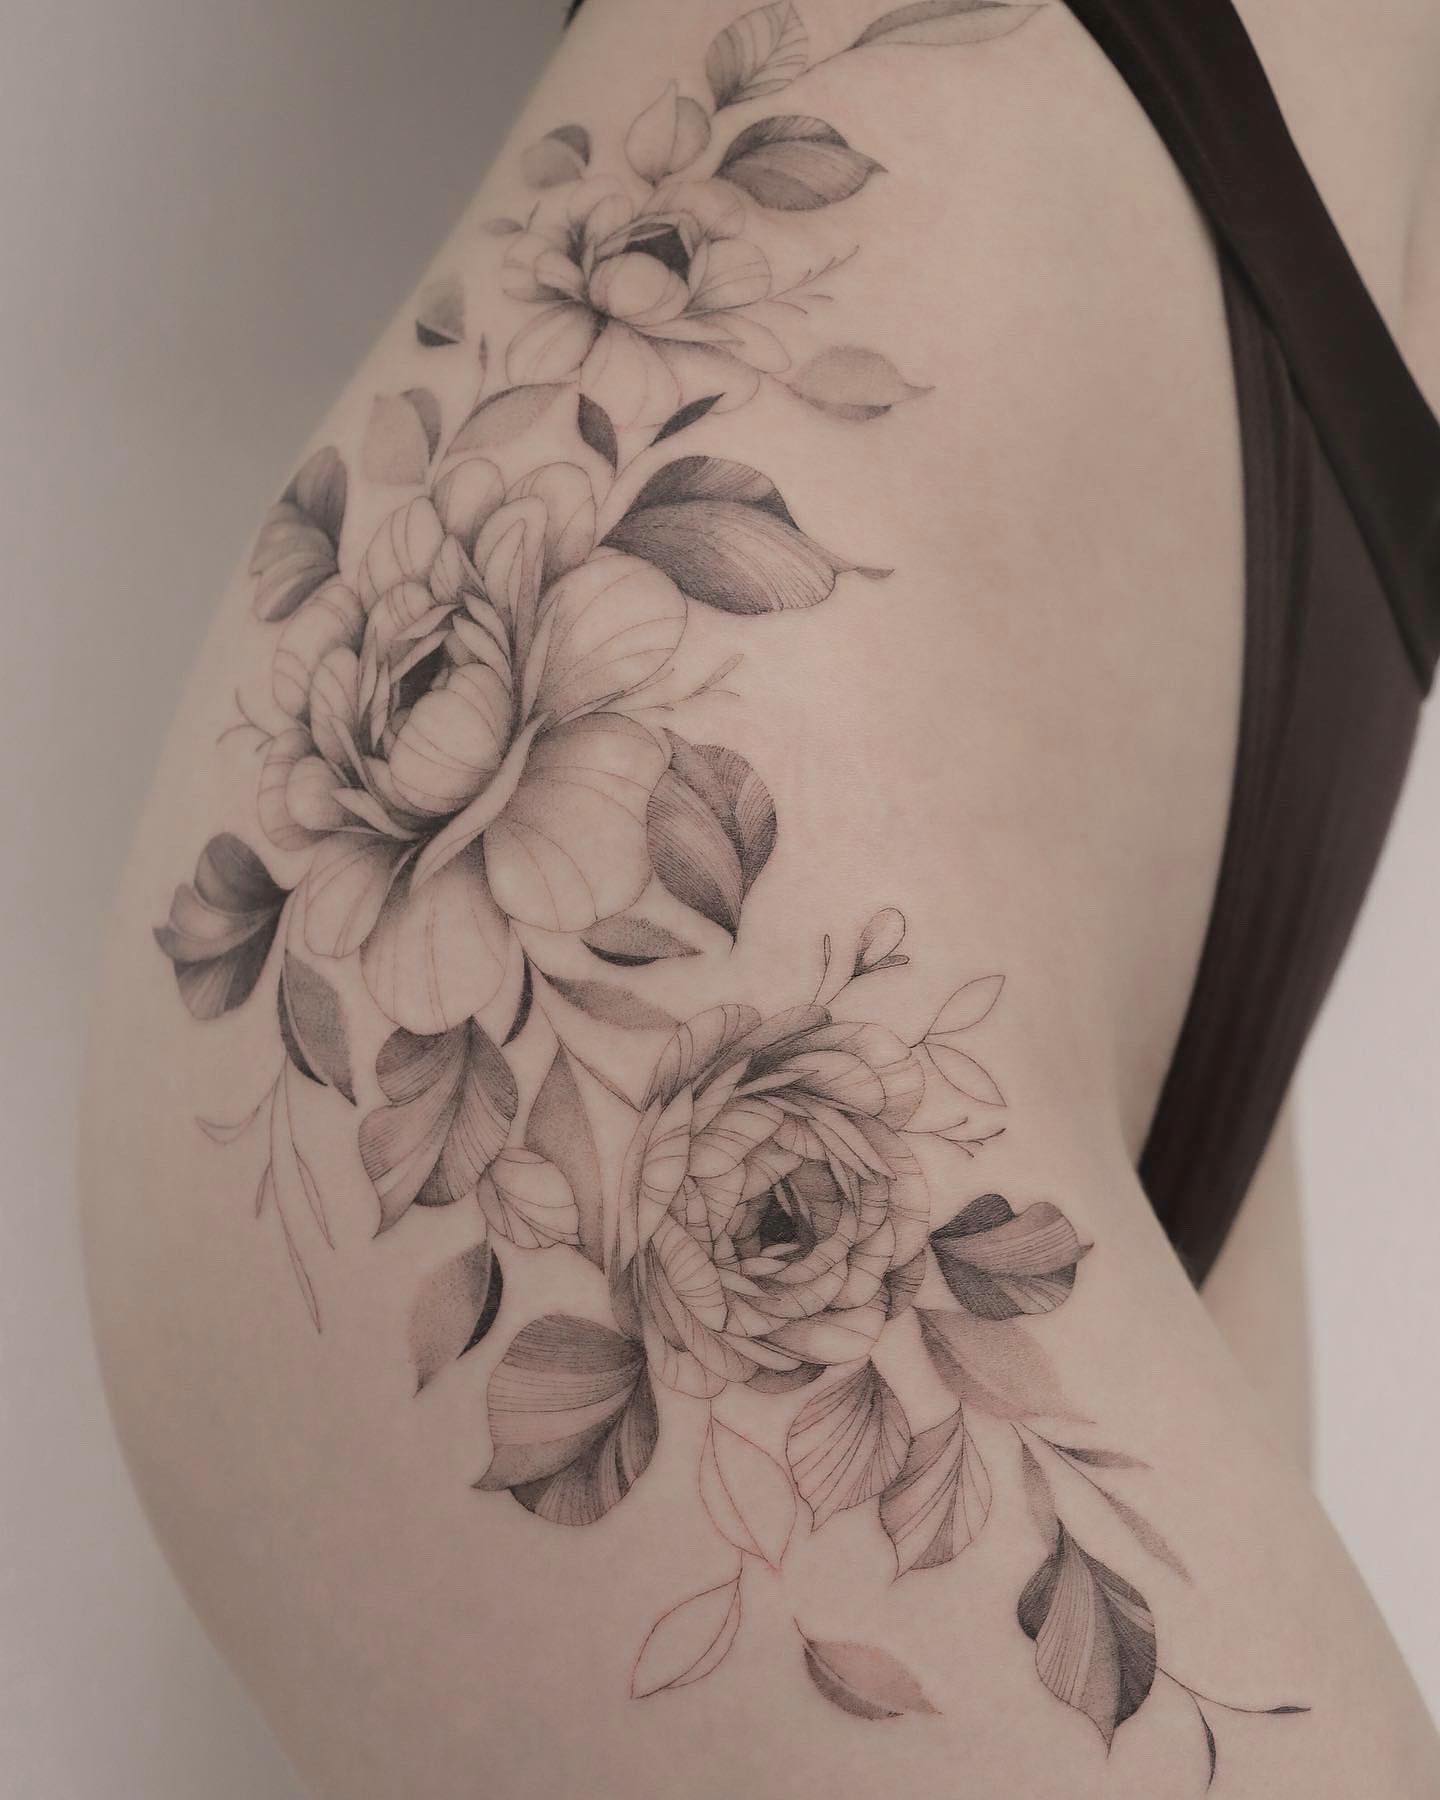 Tatuaje grande de cadera con flor.